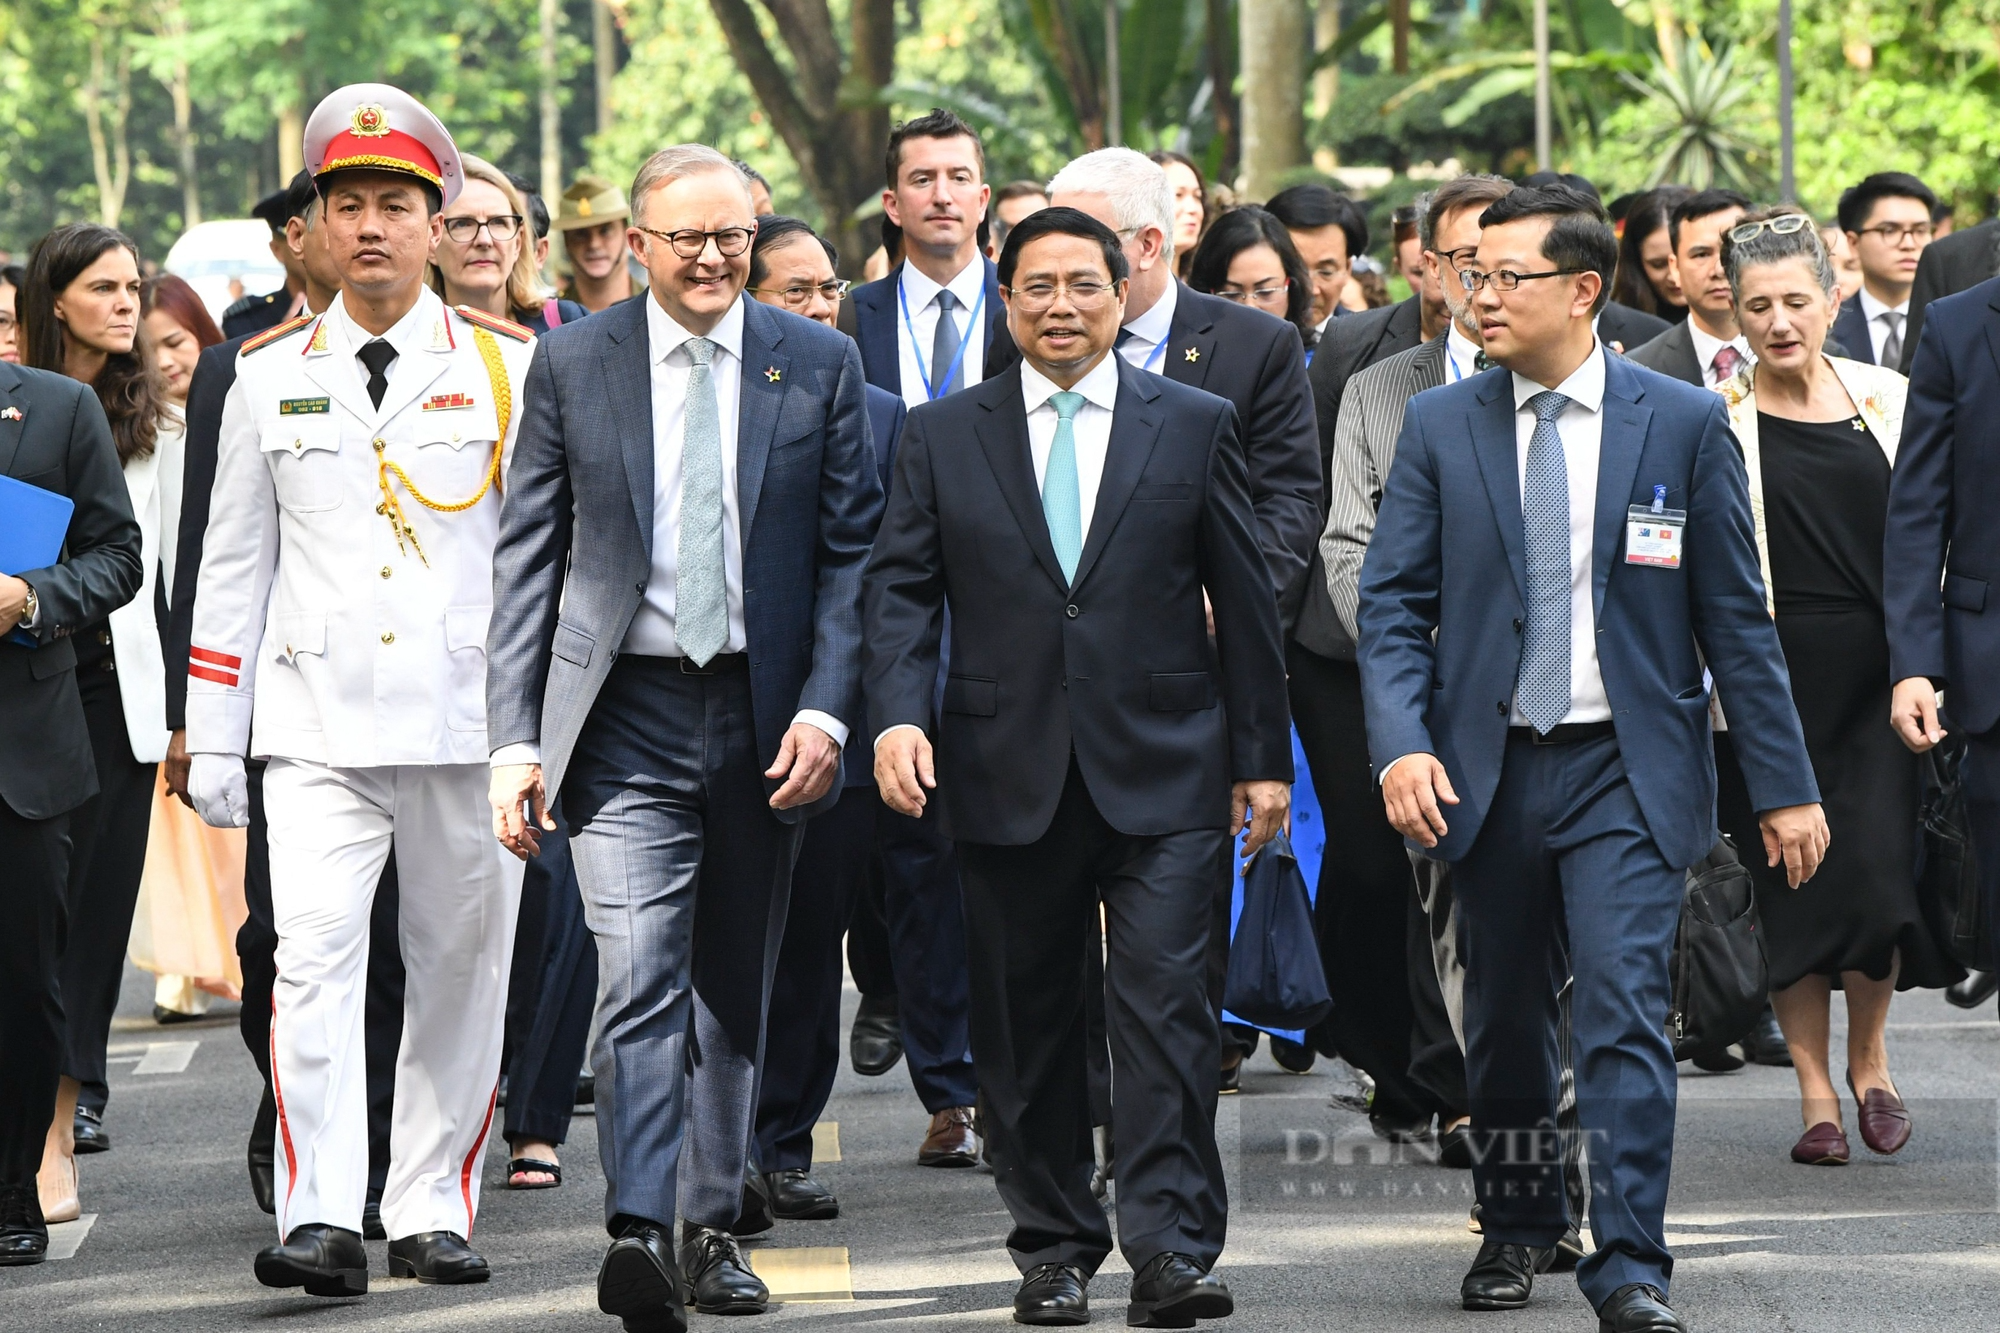 Australia hỗ trợ Việt Nam 105 triệu AUD cho hợp tác cơ sở hạ tầng, chuyển đổi năng lượng - Ảnh 1.